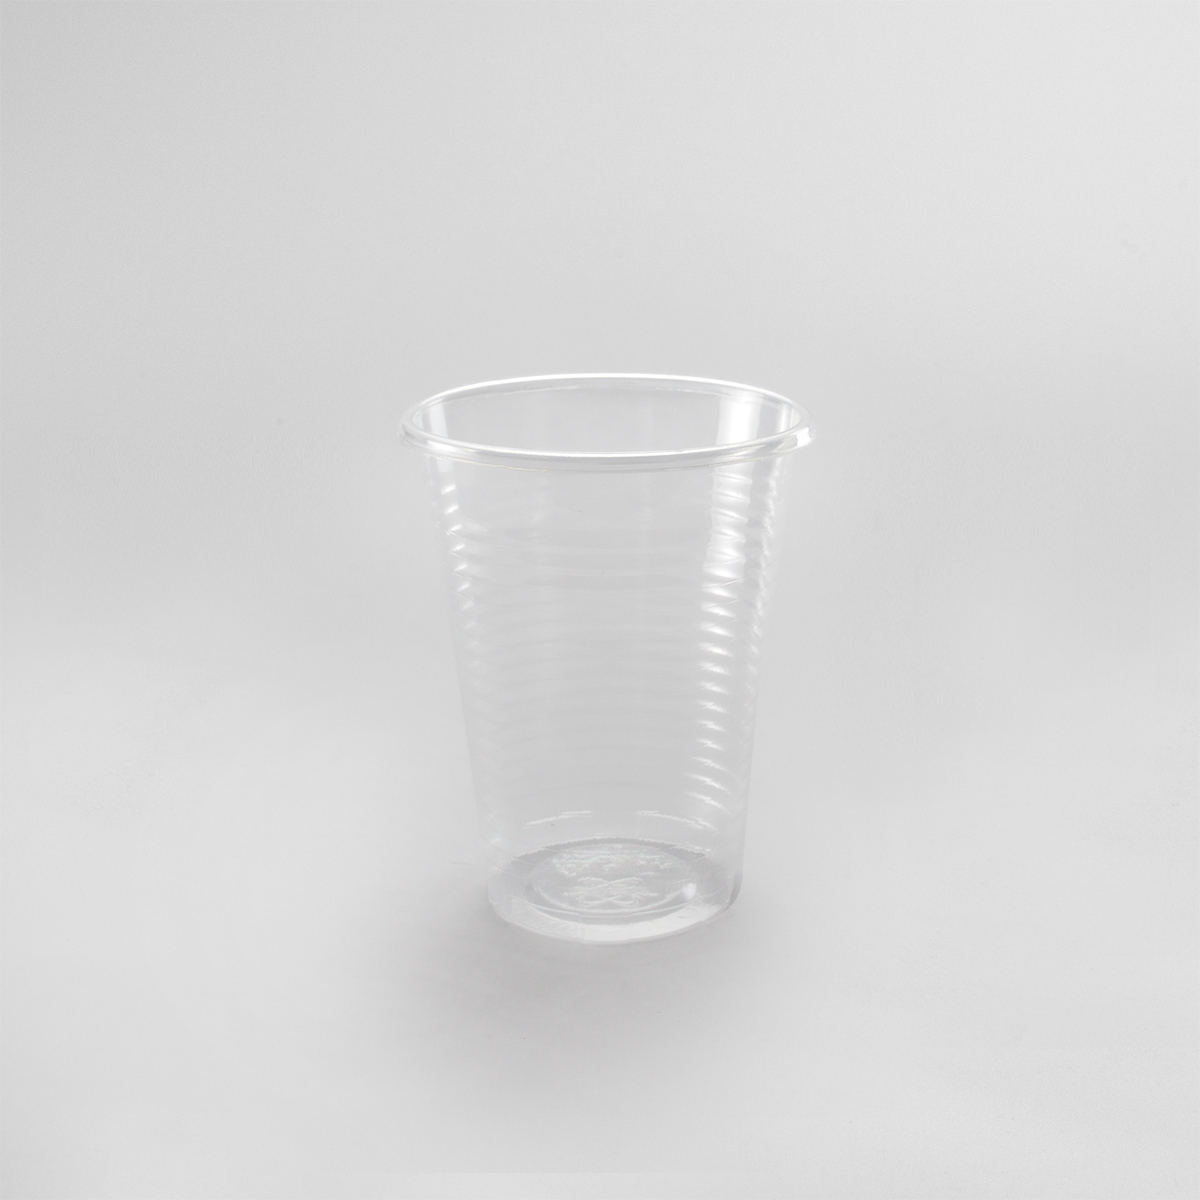 Cup (700 pieces)